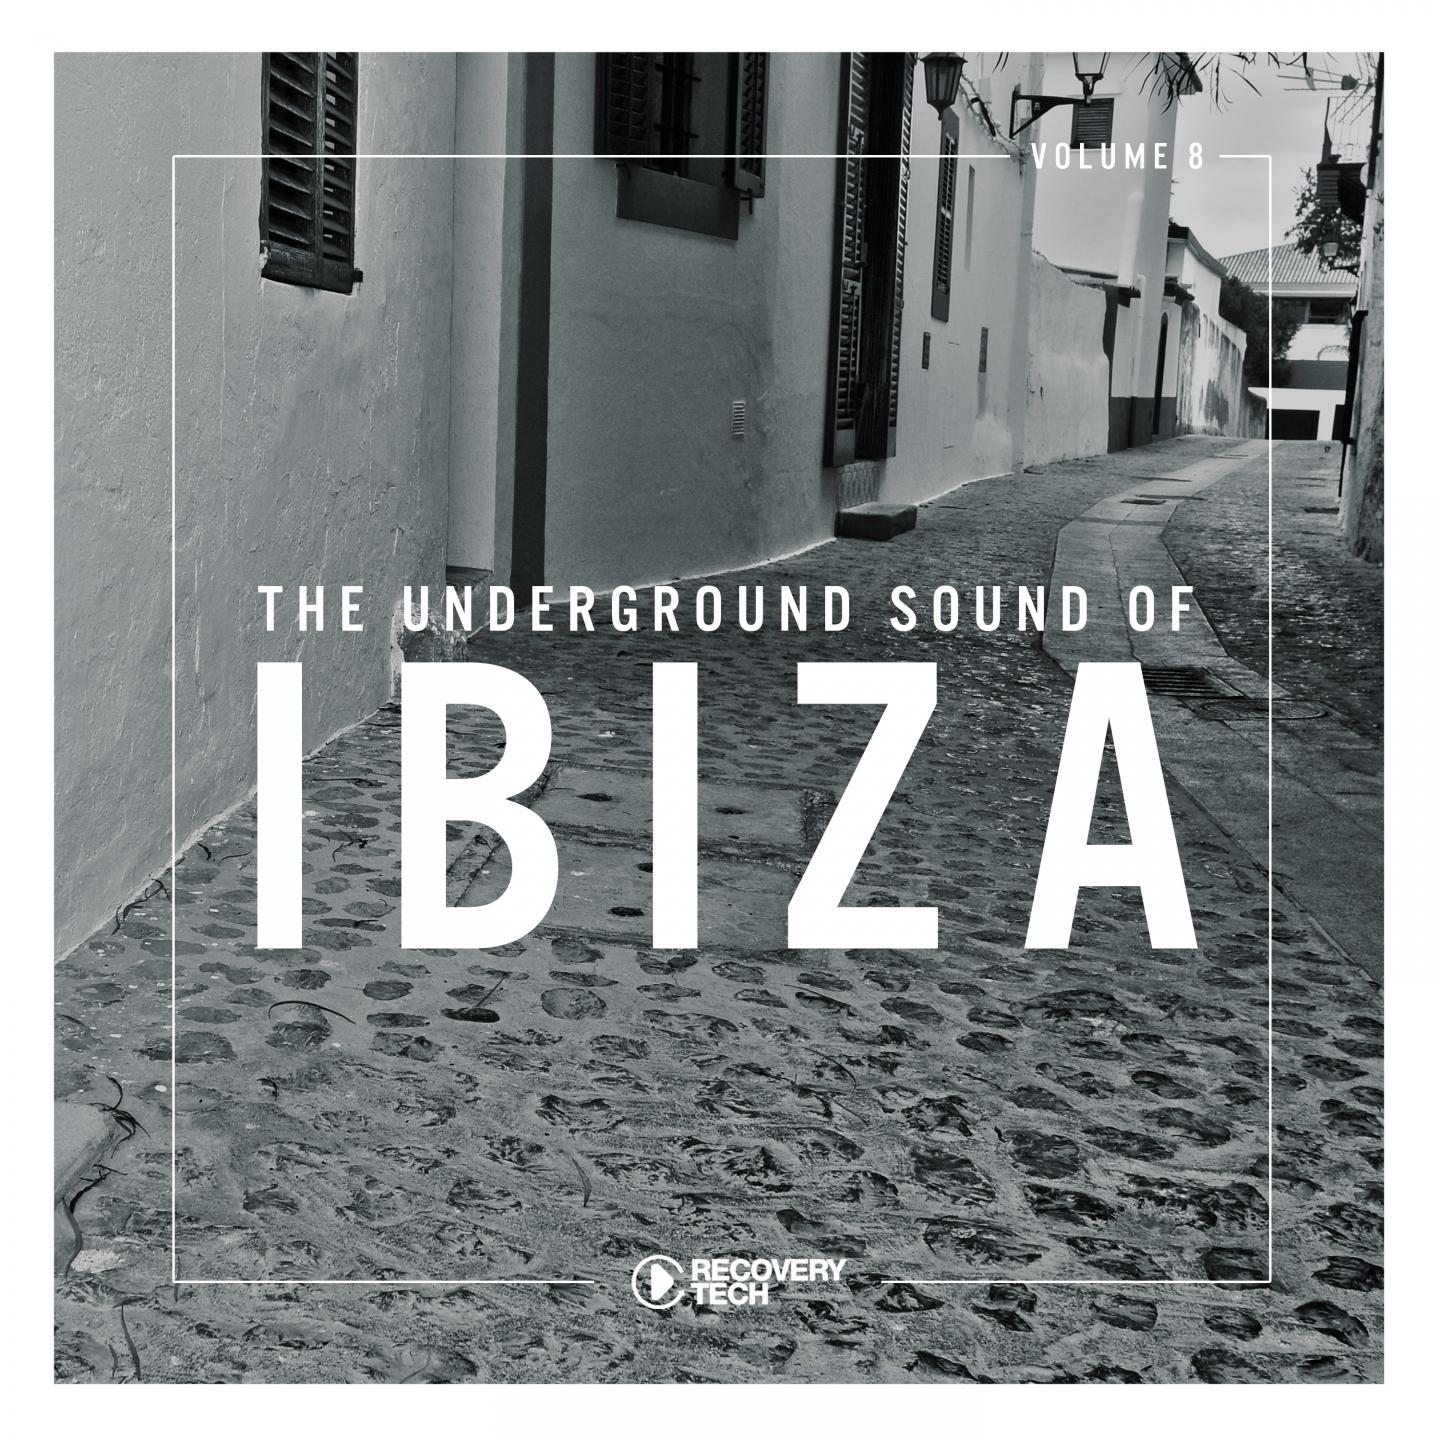 The Underground Sound of Ibiza, Vol. 8